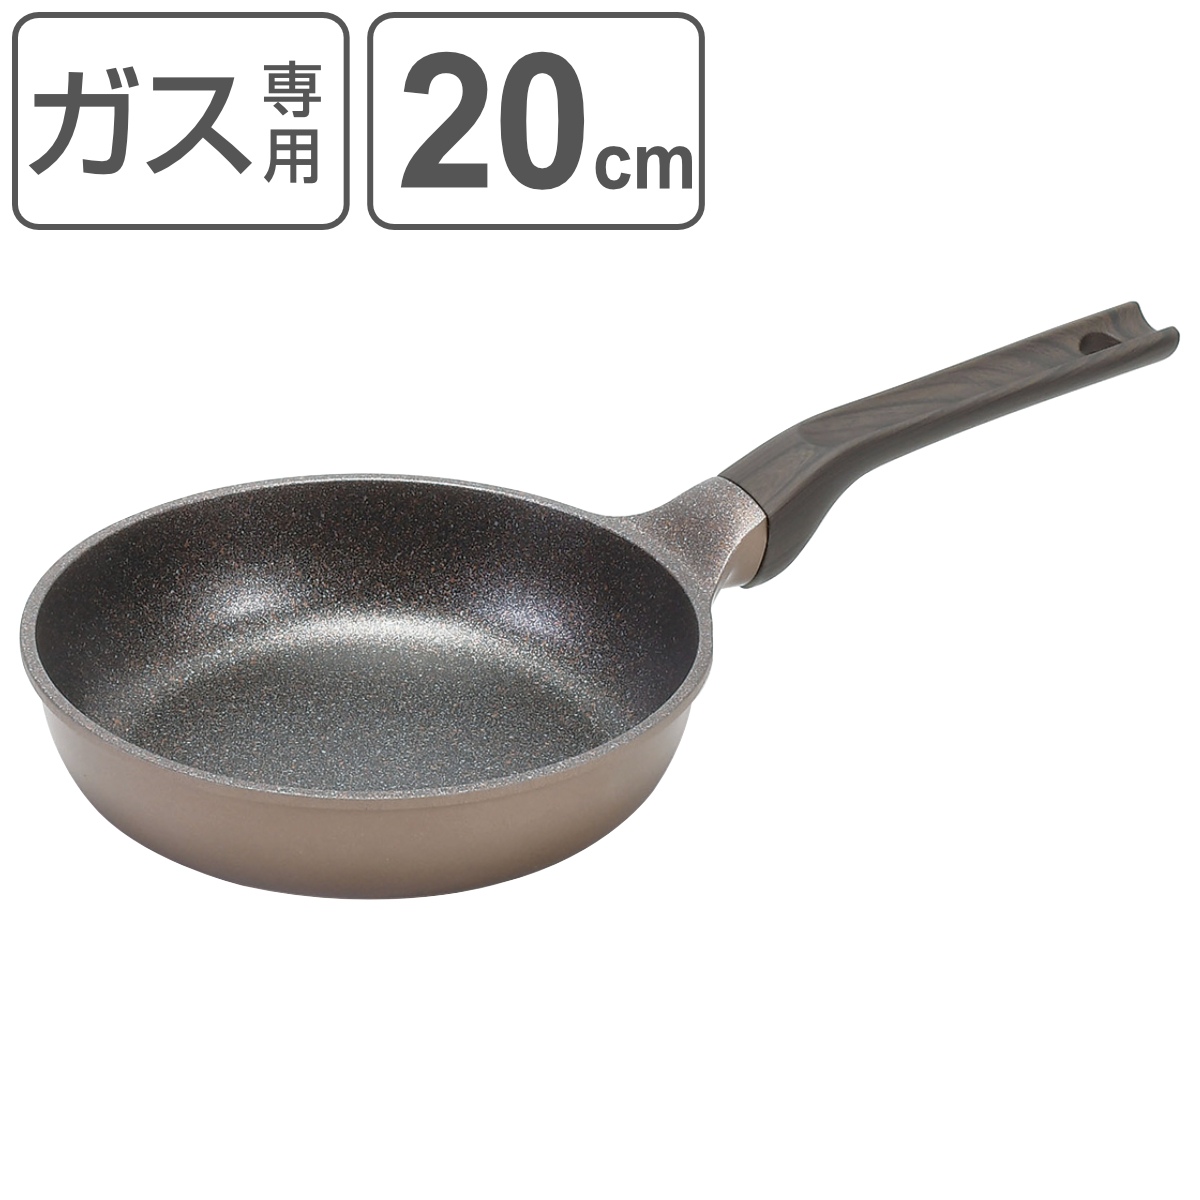 フライパン 20cm 菜箸が置ける メガストーンフライパン